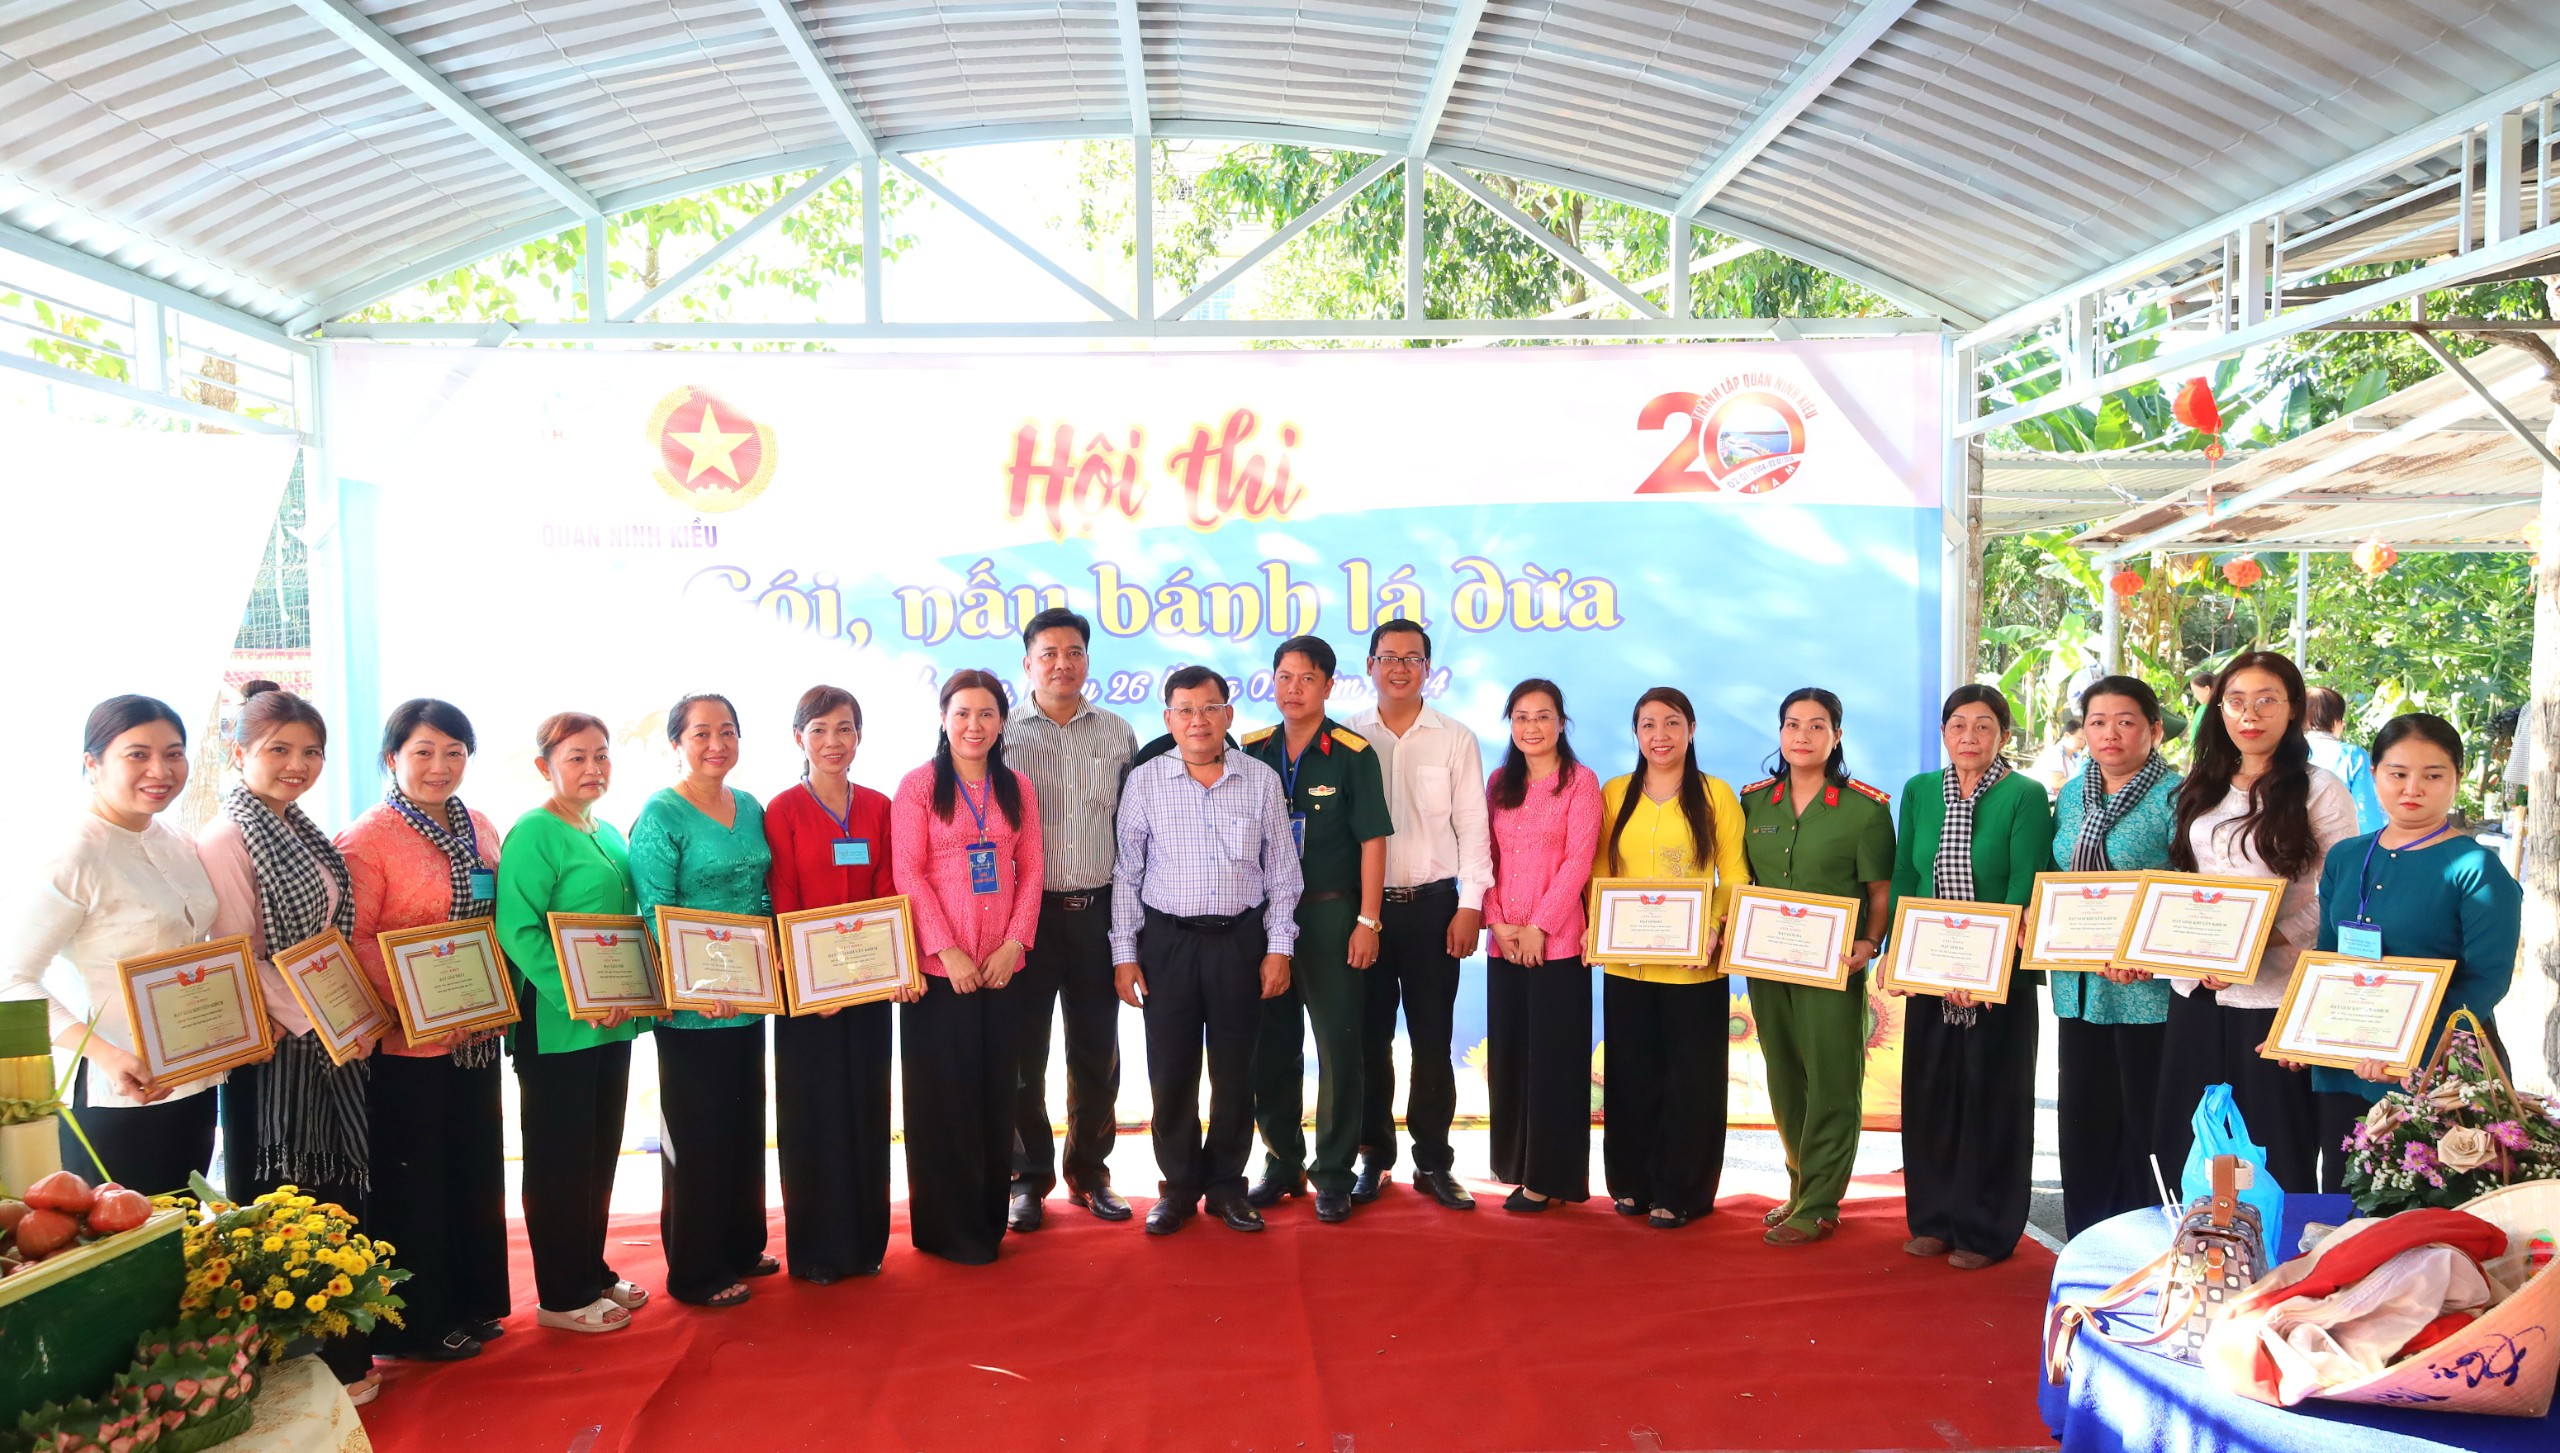 Ông Trần Tiến Dũng - Phó Bí thư Thường trực Quận ủy, Chủ tịch HĐND quận Ninh Kiều chụp hình lưu niệm cùng các đội dự thi.